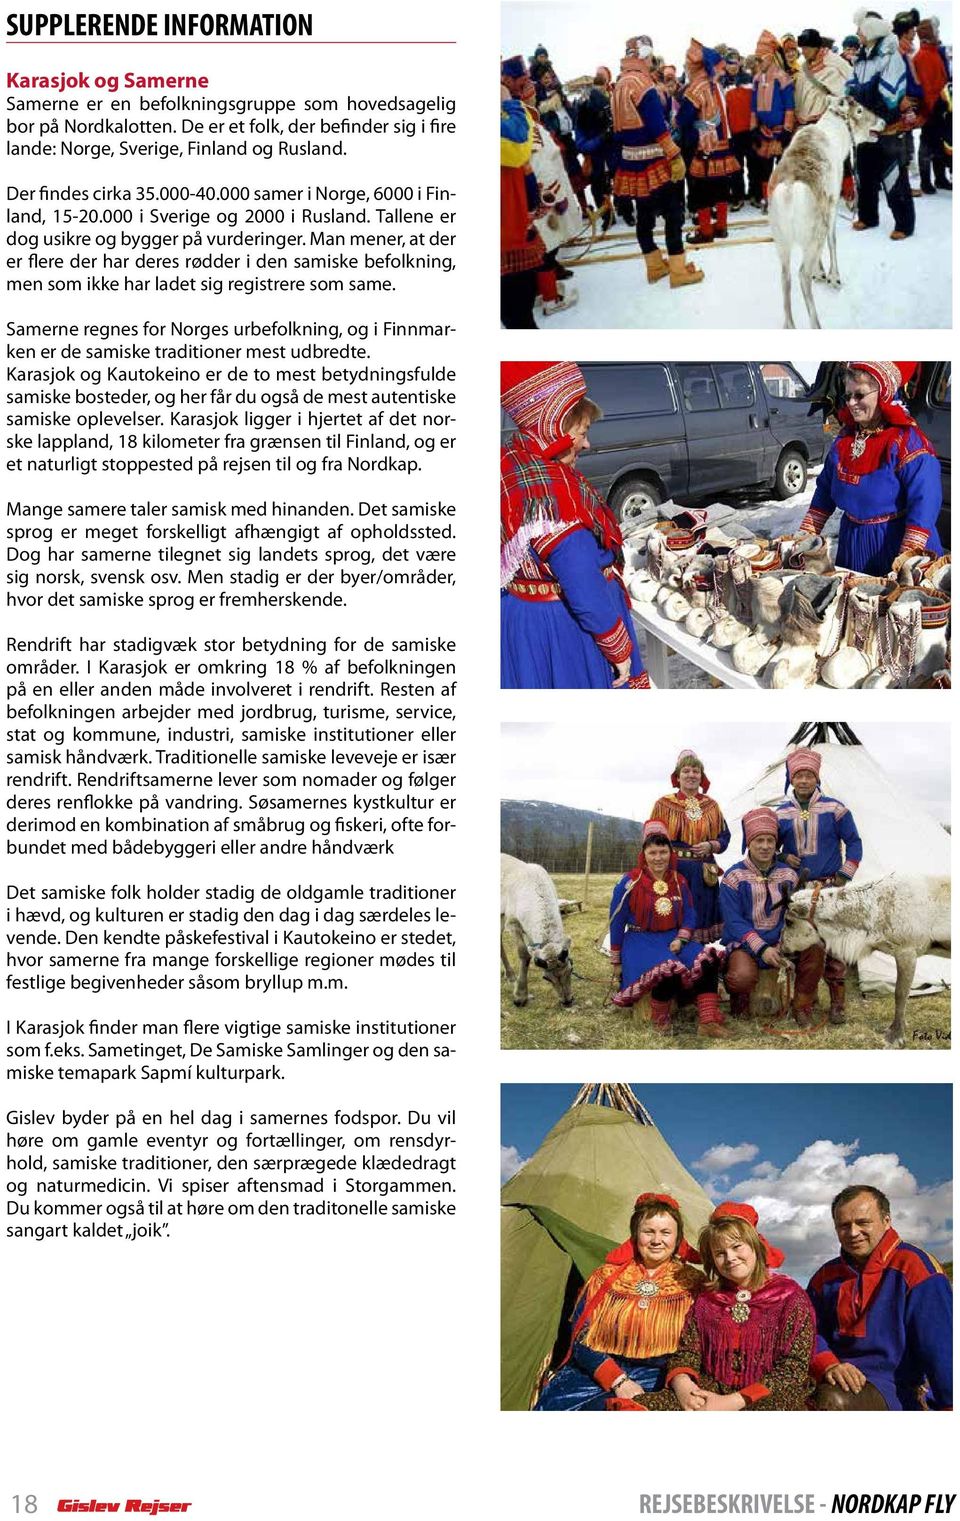 Man mener, at der er flere der har deres rødder i den samiske befolkning, men som ikke har ladet sig registrere som same.